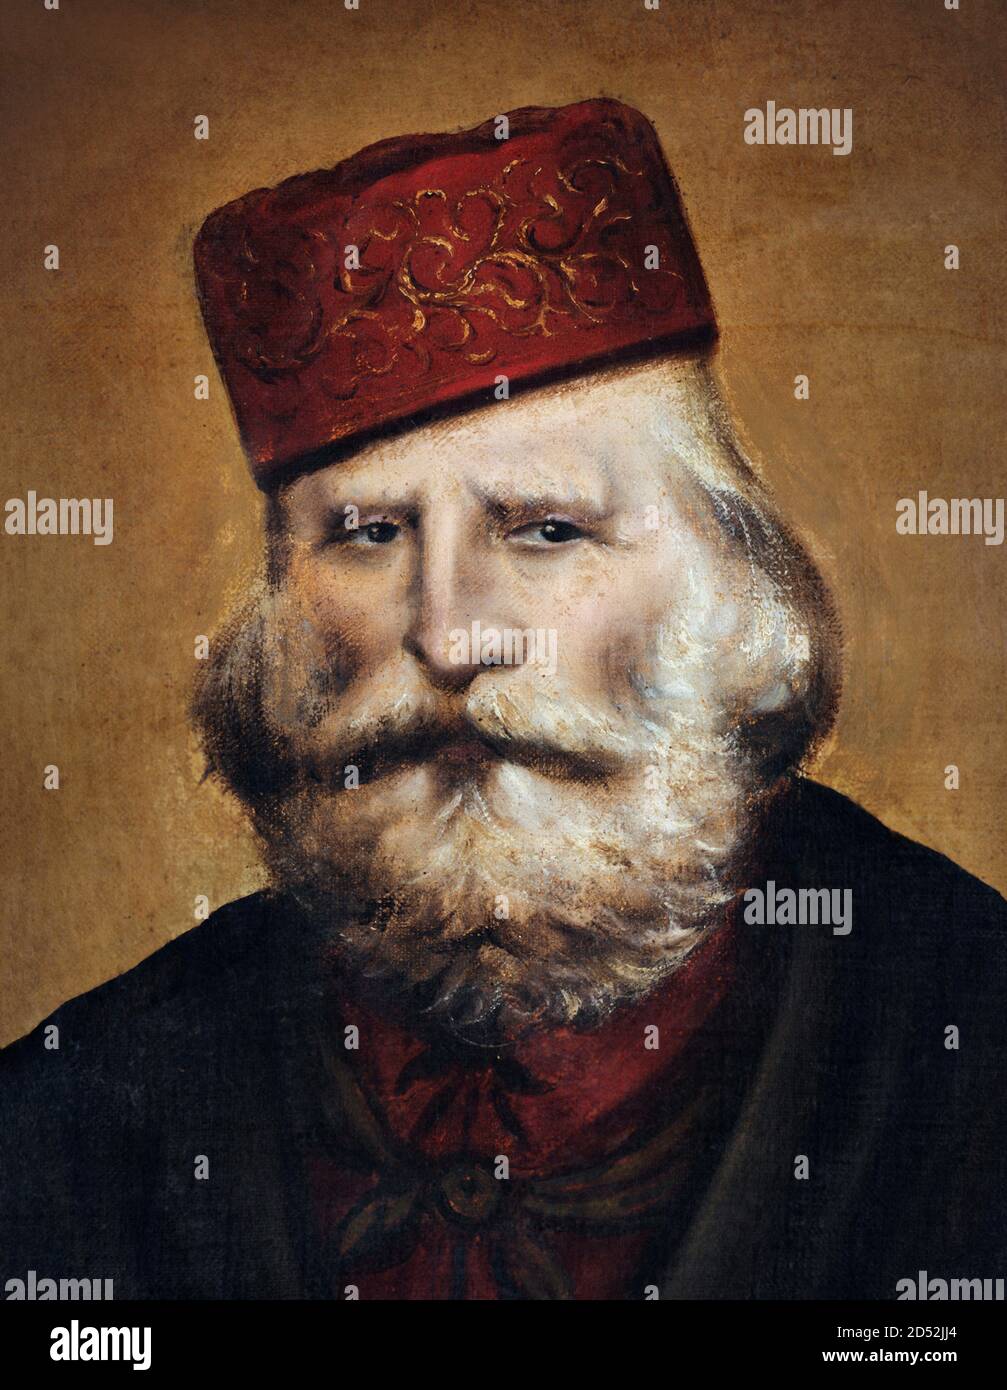 Giuseppe Garibaldi. Portrait du général et homme politique italien Giuseppe Maria Garibaldi (1807-1882) Banque D'Images